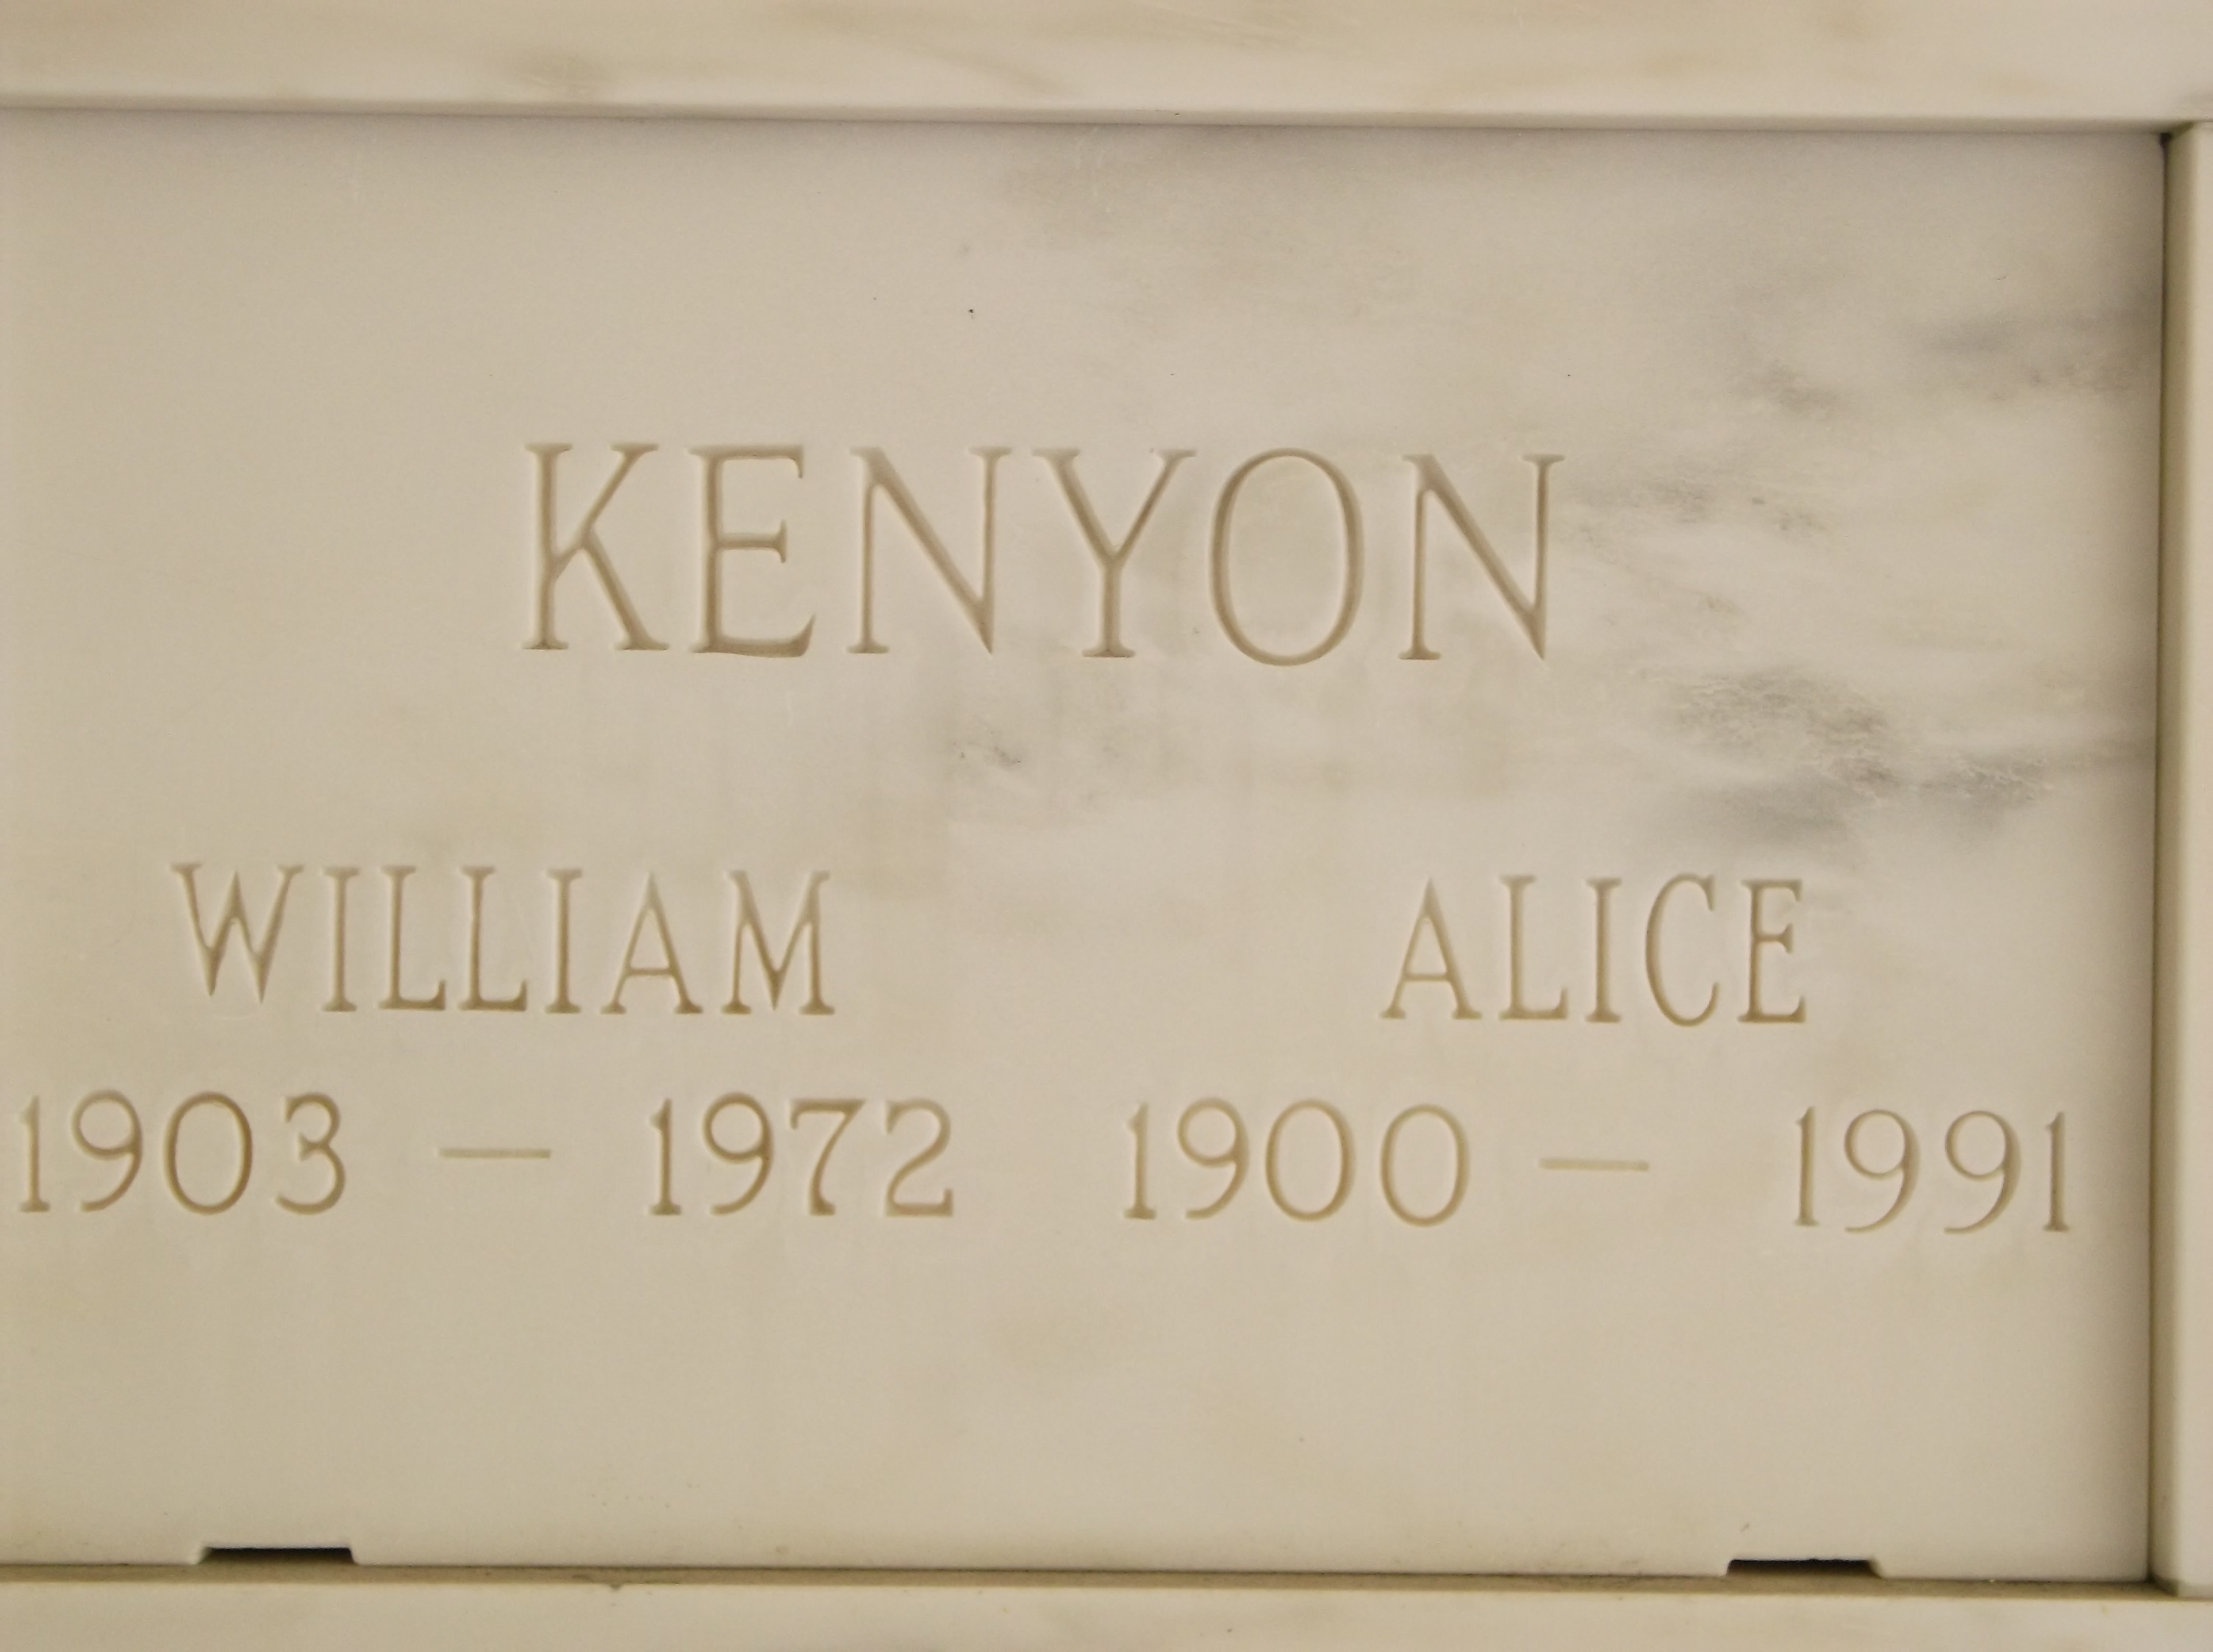 William Kenyon